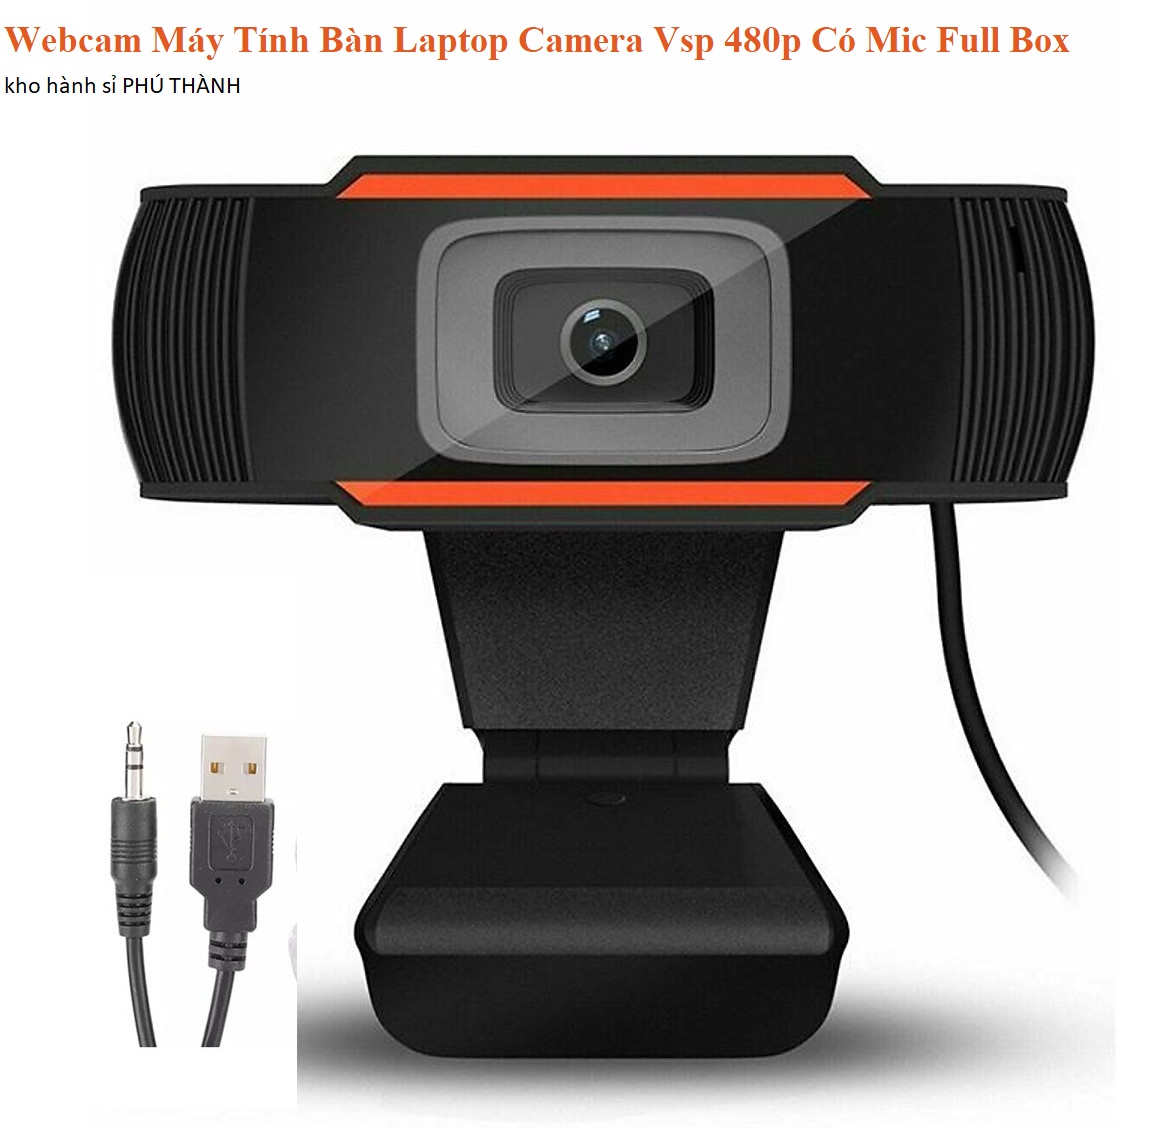 Webcam Máy Tính Bàn Laptop Camera Vsp 480p Có Mic Full Box - Phụ Kiện Máy Tính